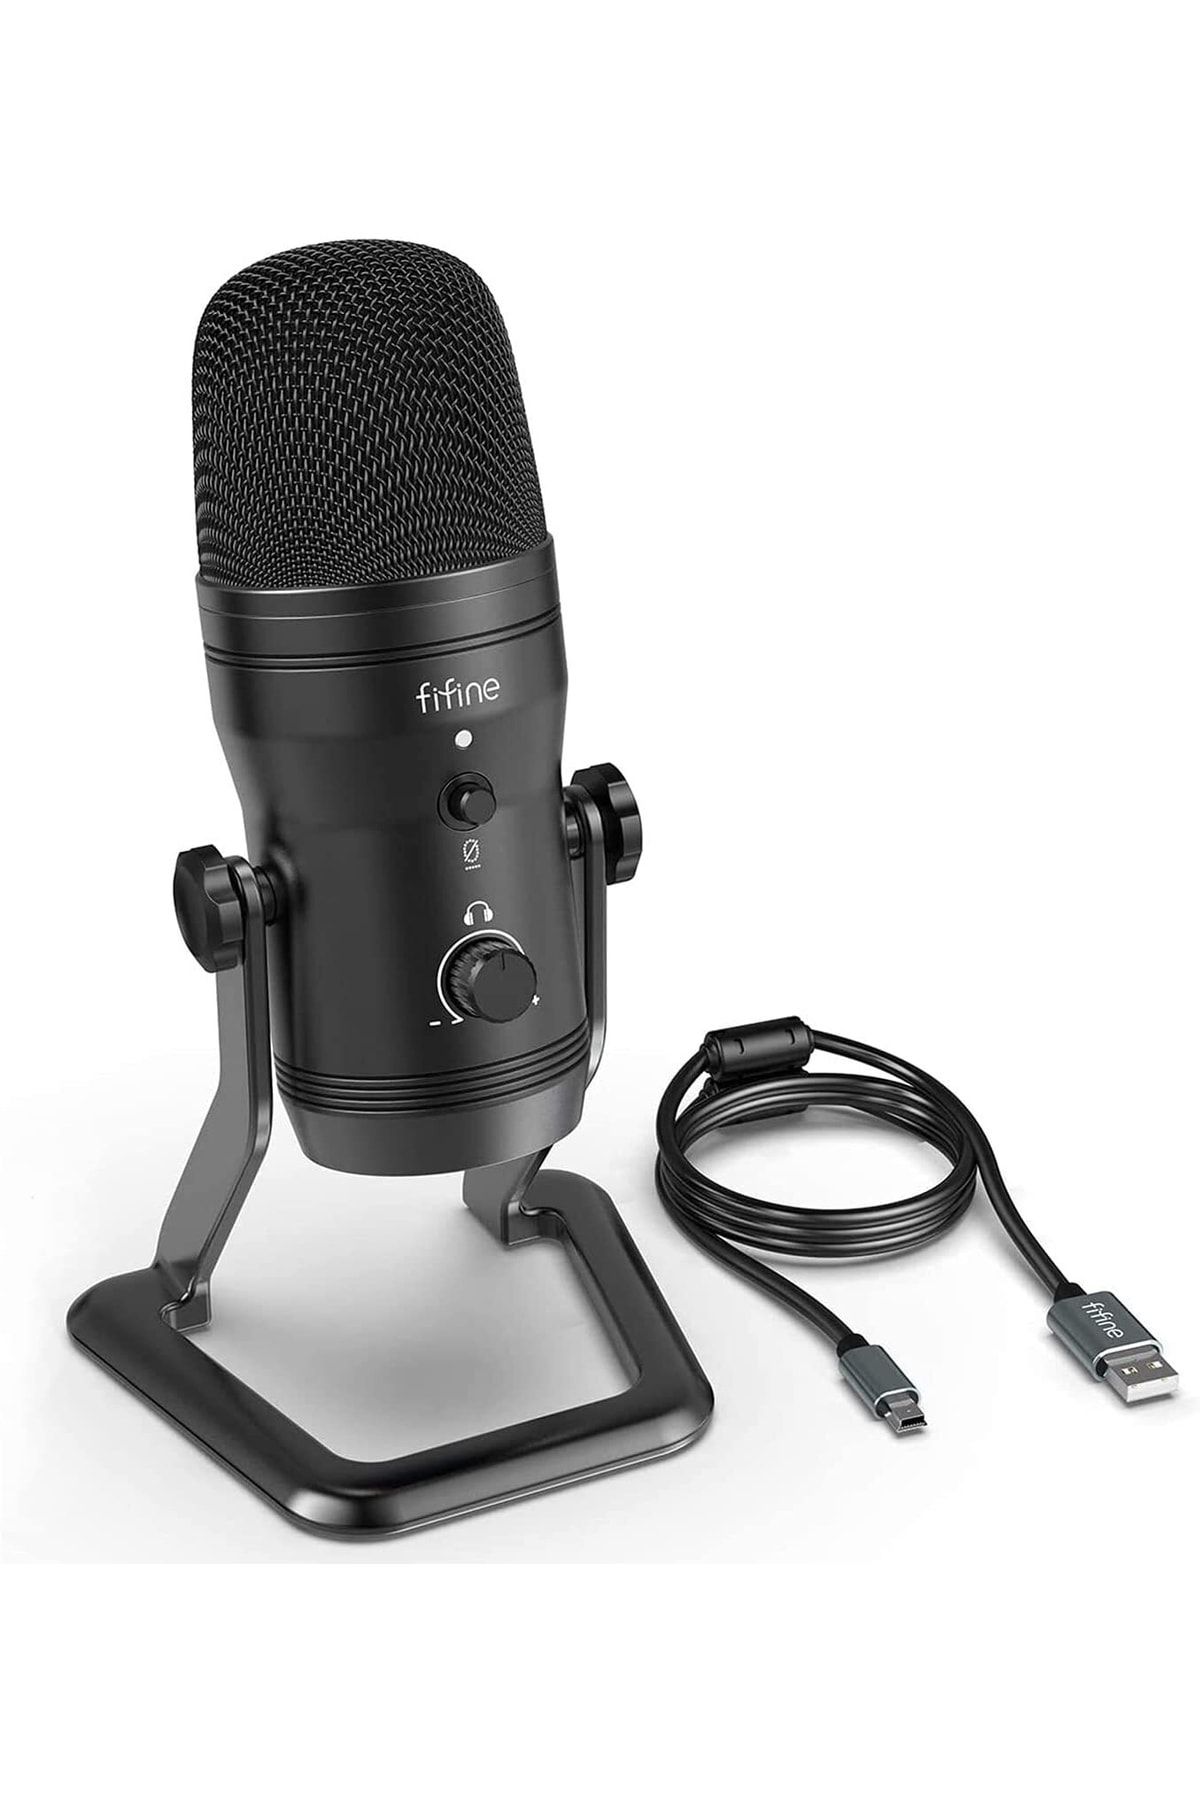 Fifine K690 Profesyonel Stüdyo Kayıt Mikrofonu - Oyuncu Mikrofonu